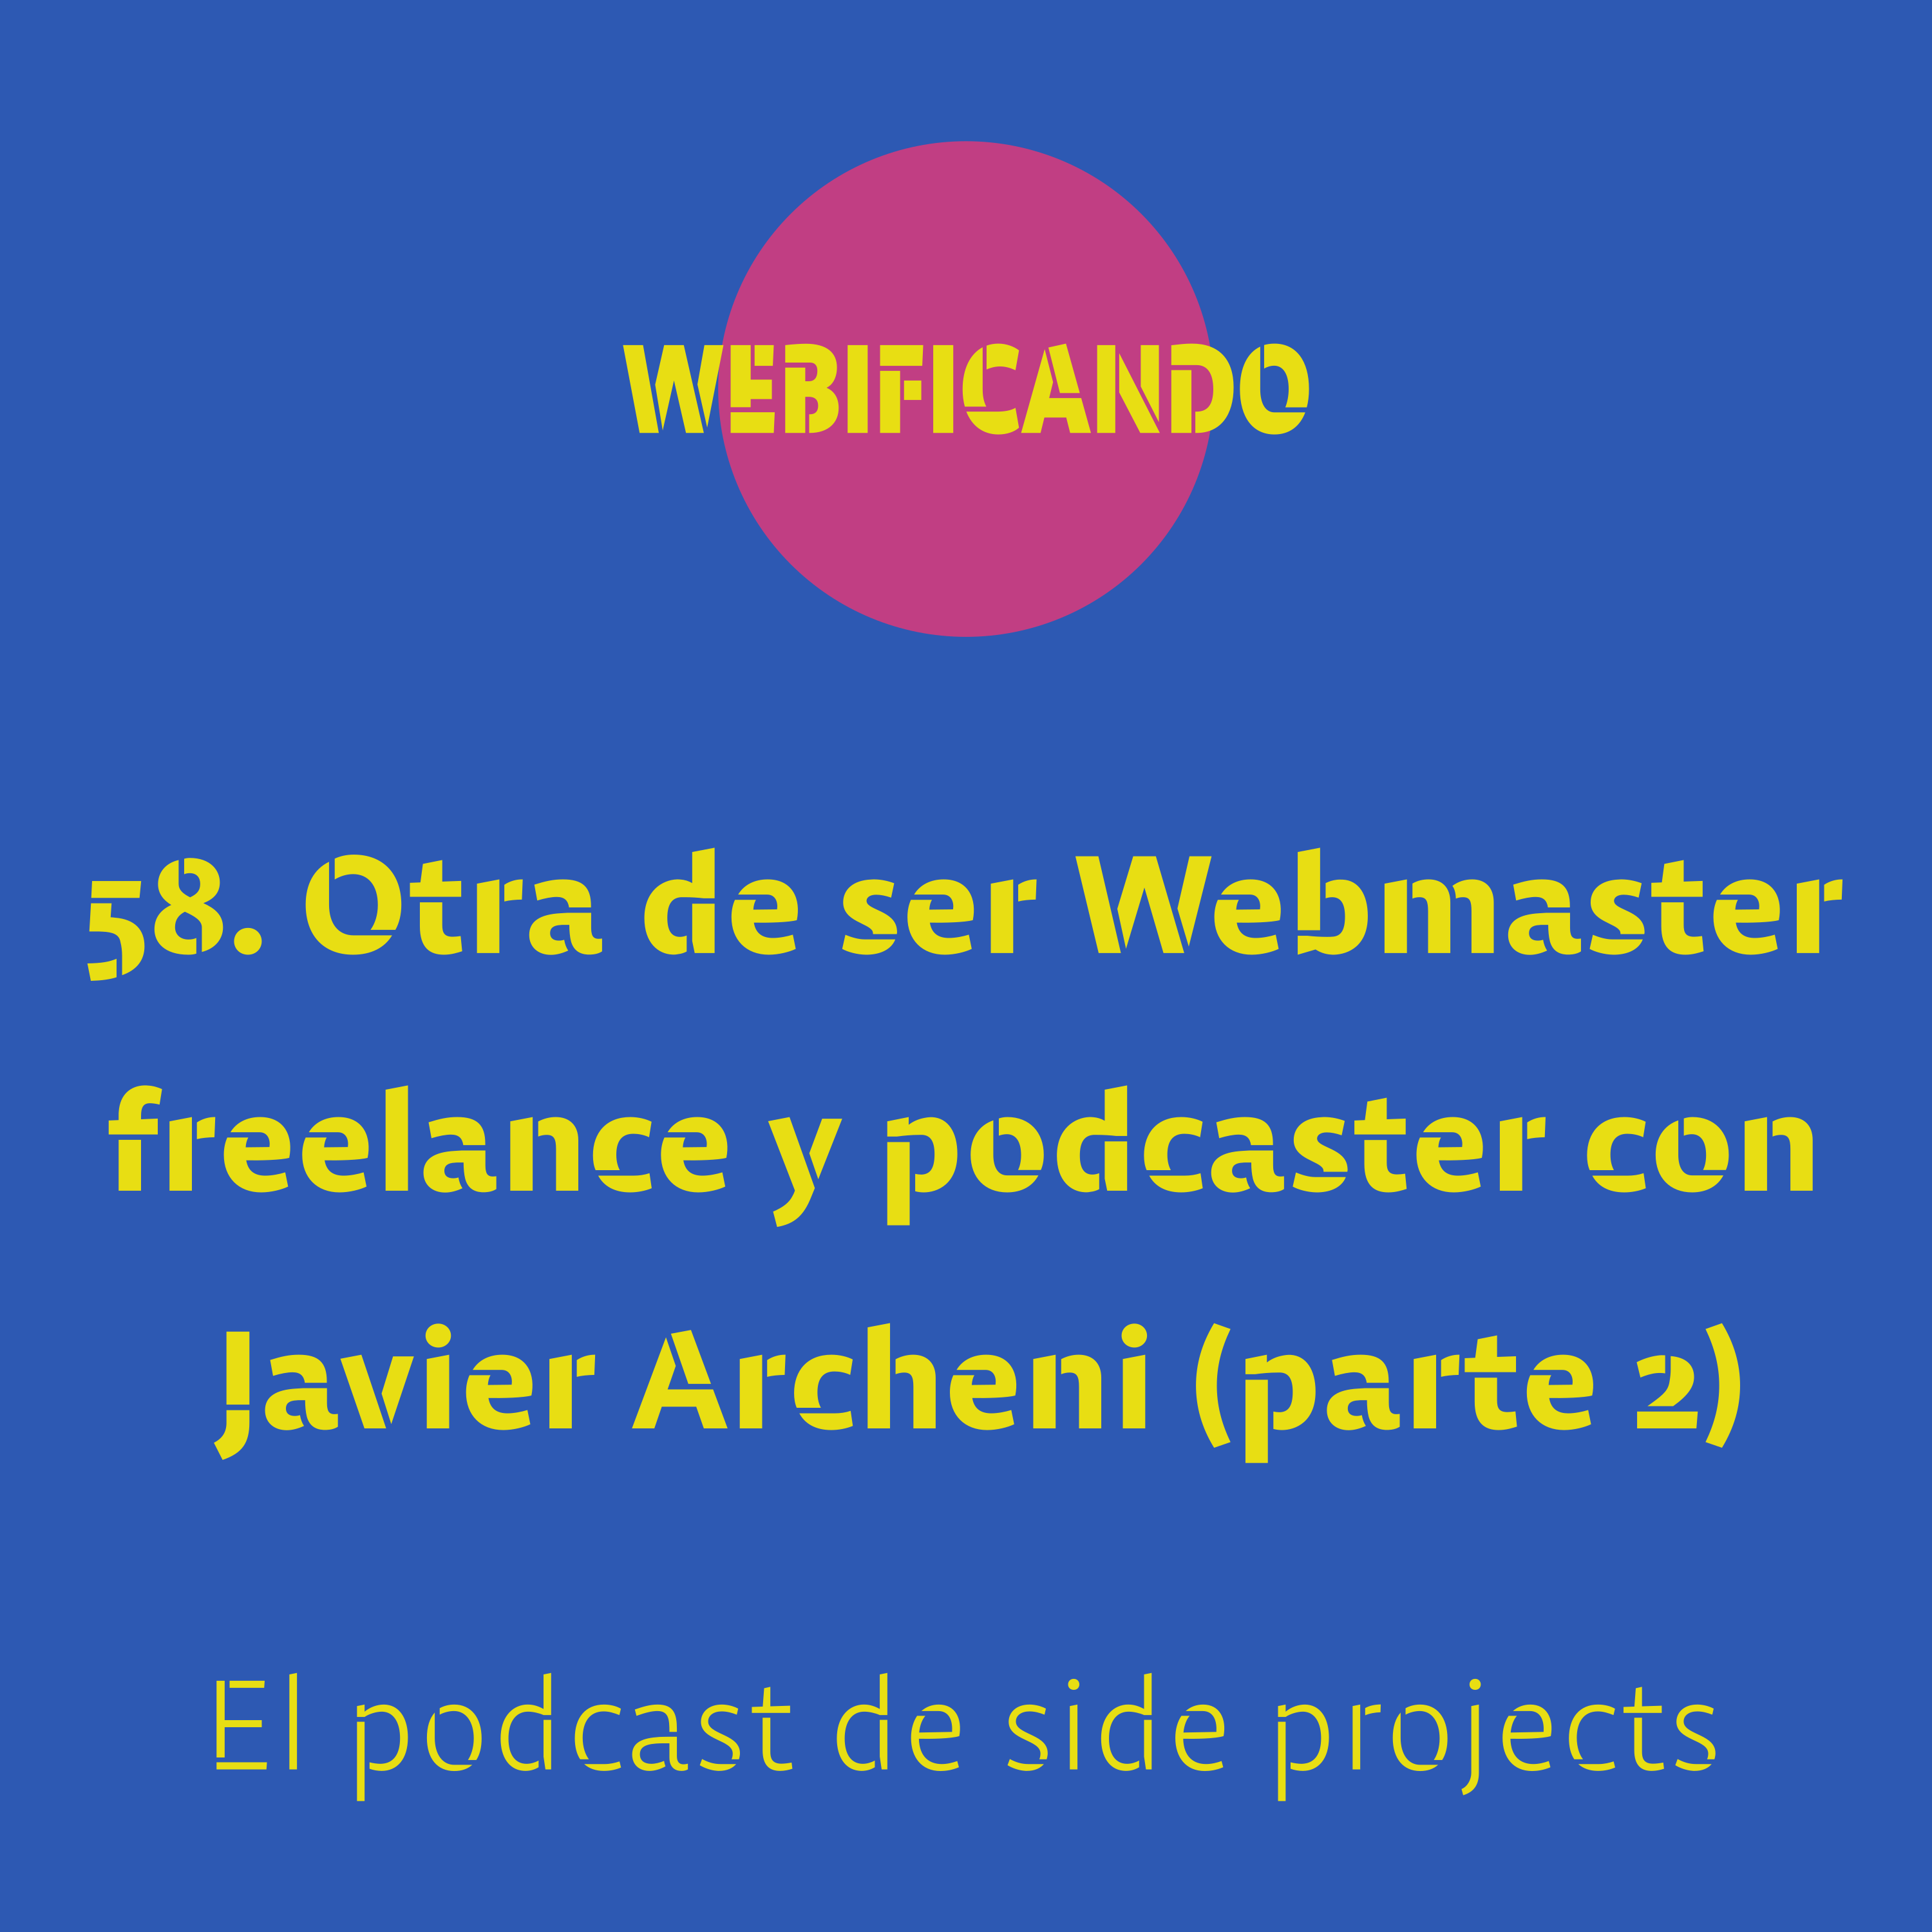 58. Otra de ser Webmaster freelance y podcaster con Javier Archeni (parte 2)